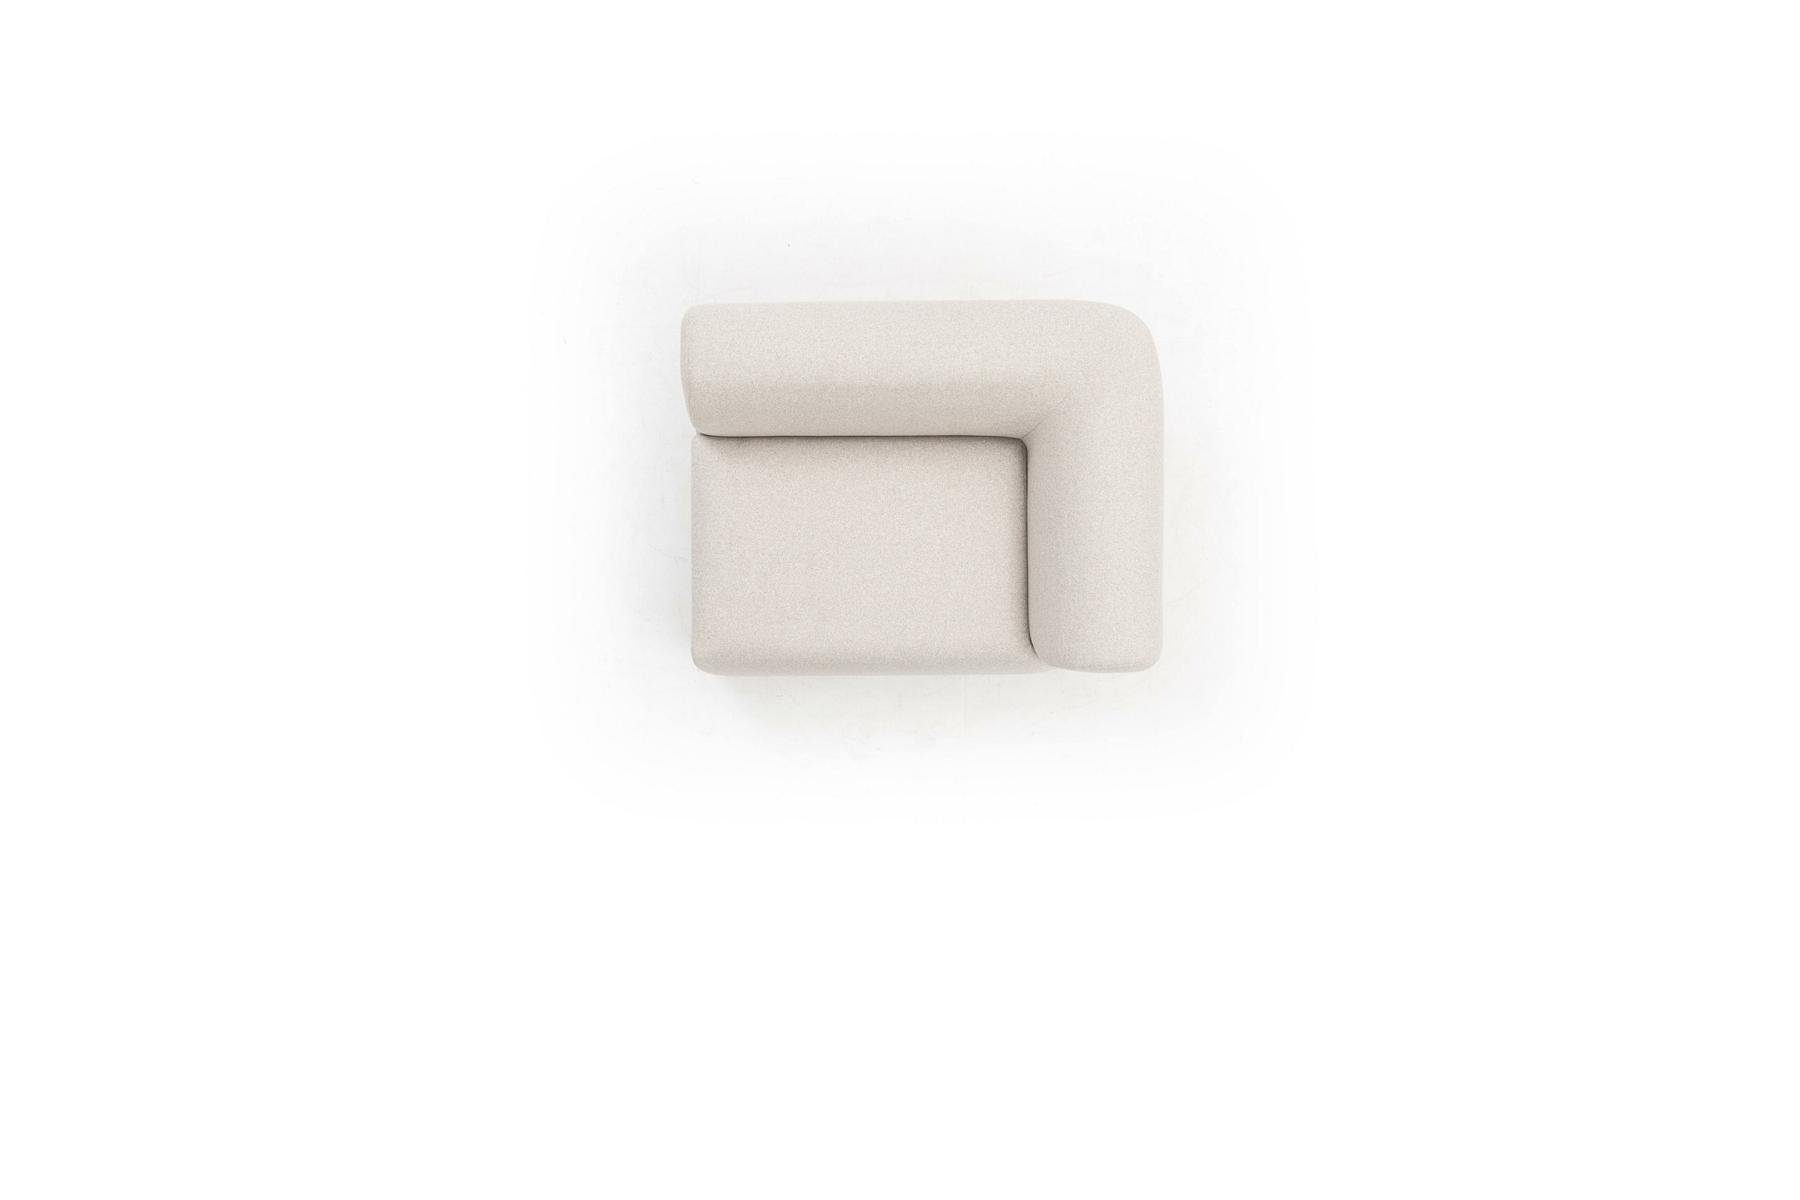 Ecksofa Luxus JVmoebel Modern Couch, Ecksofa in Made Wohnzimmer Design U-Form Europe Stil